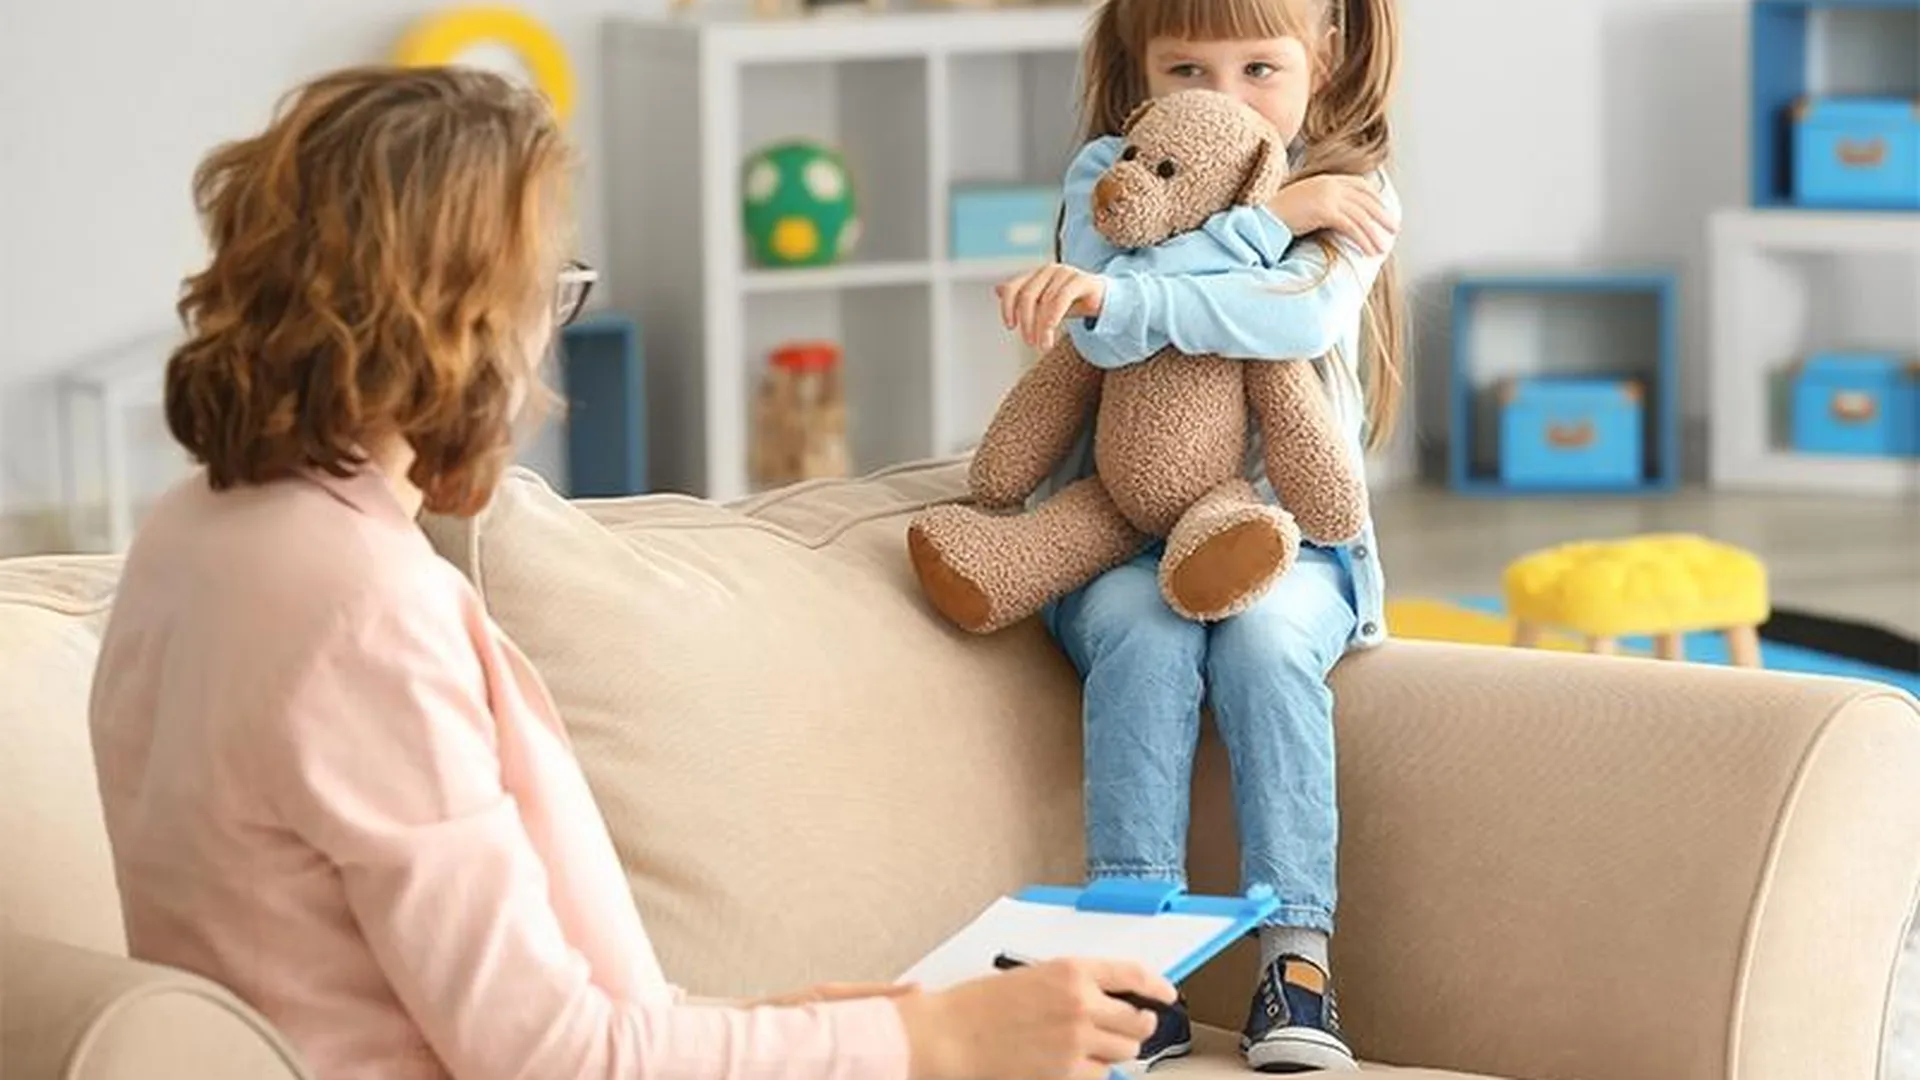 Получить консультацию по воспитанию ребенка можно не вставая с дивана